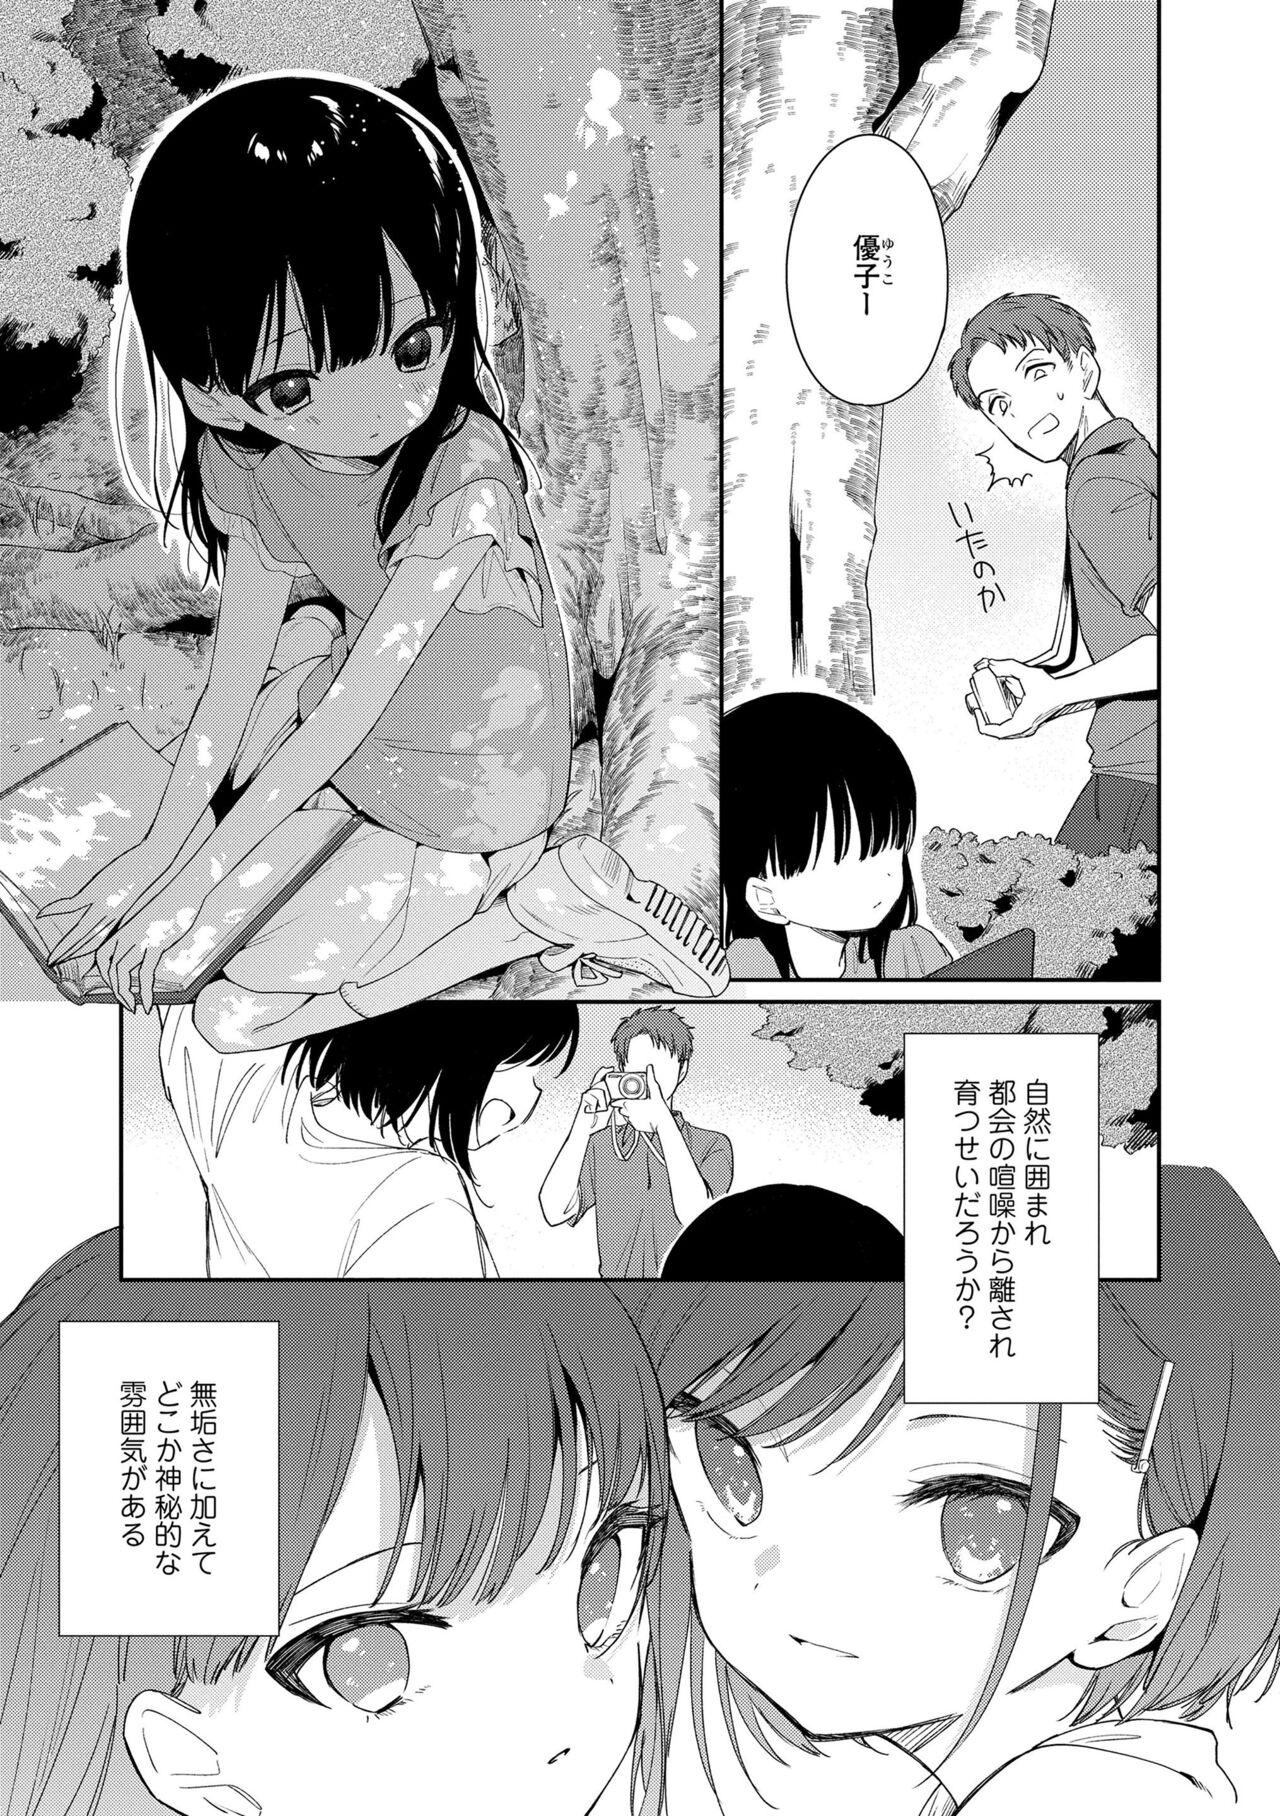 Groping Omocha no Jinsei Rebolando - Page 7